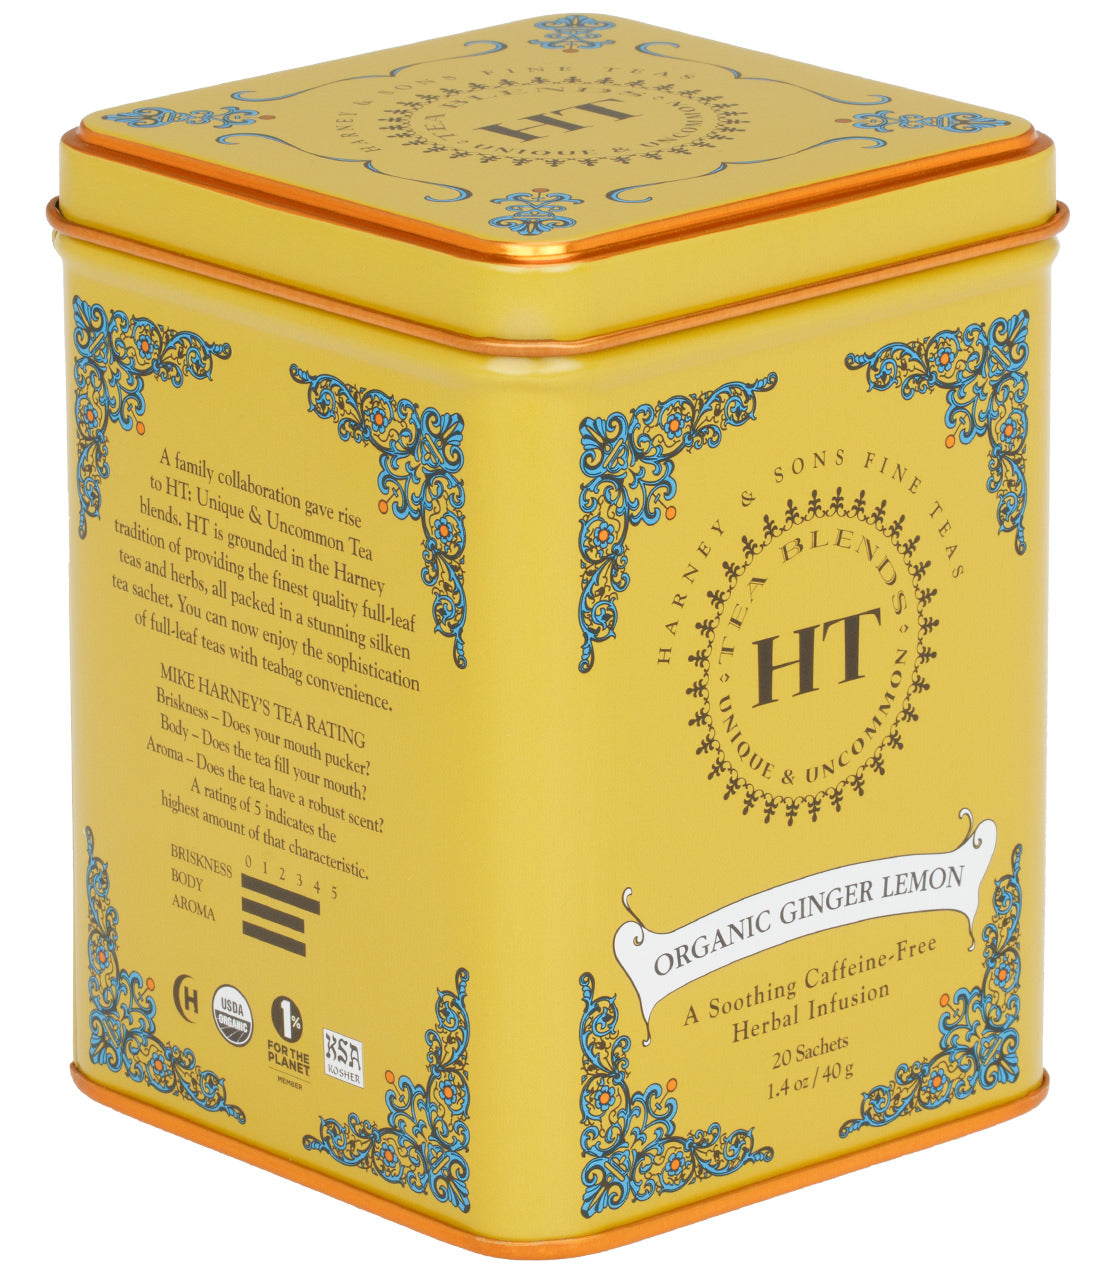 Organic Ginger Lemon, HT Tin of 20 Sachets - Sachets HT Tin of 20 Sachets - Harney & Sons Fine Teas